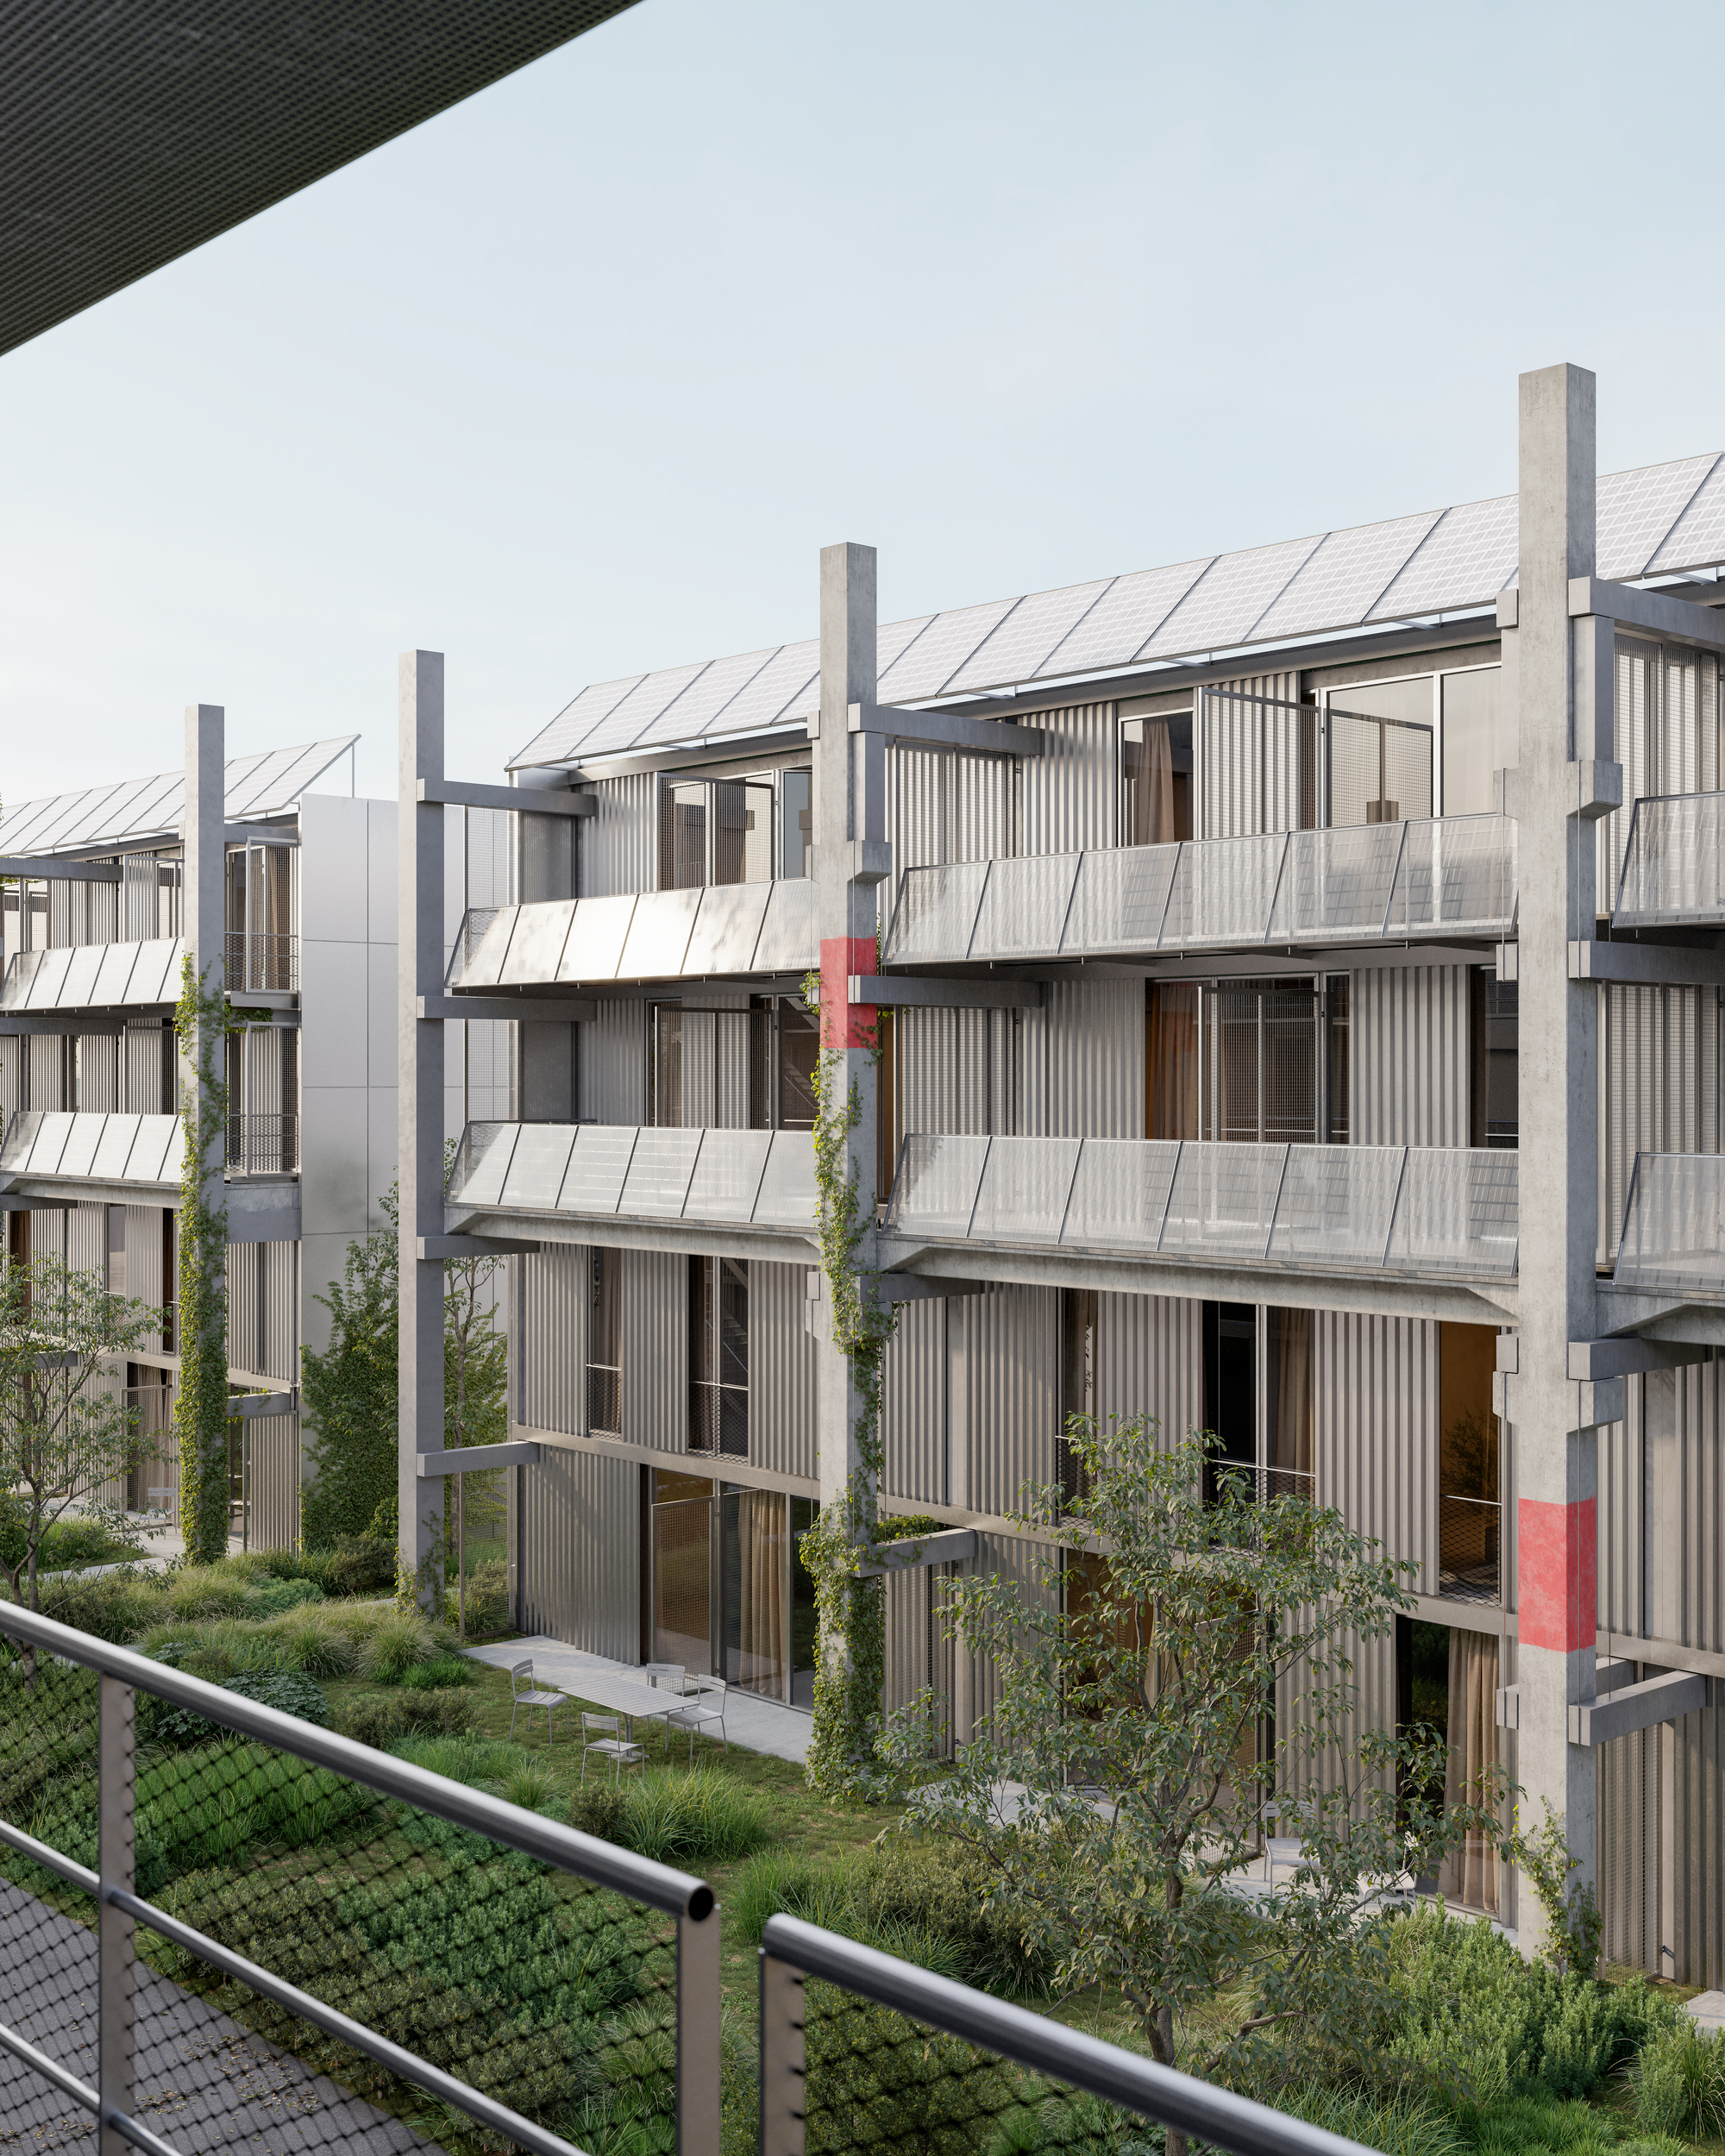 Parabase повторно использует сборные железобетонные элементы для радикального жилищного строительства в Базеле, Швейцария